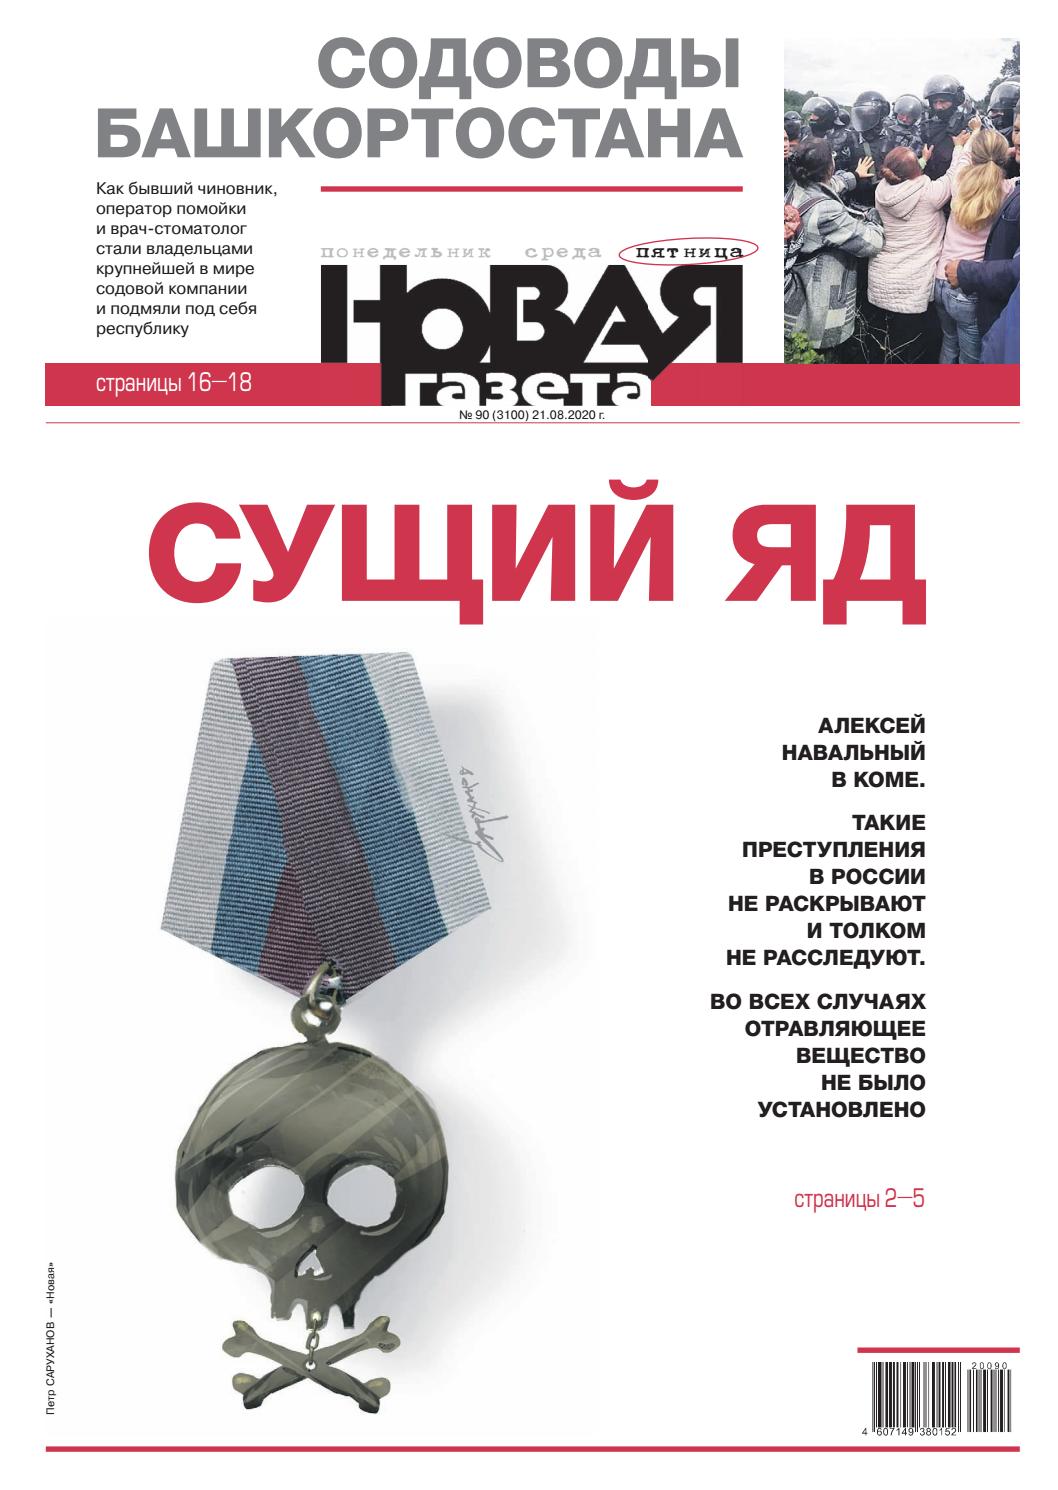 Новая газета №90 (пятница), 21 августа 2020